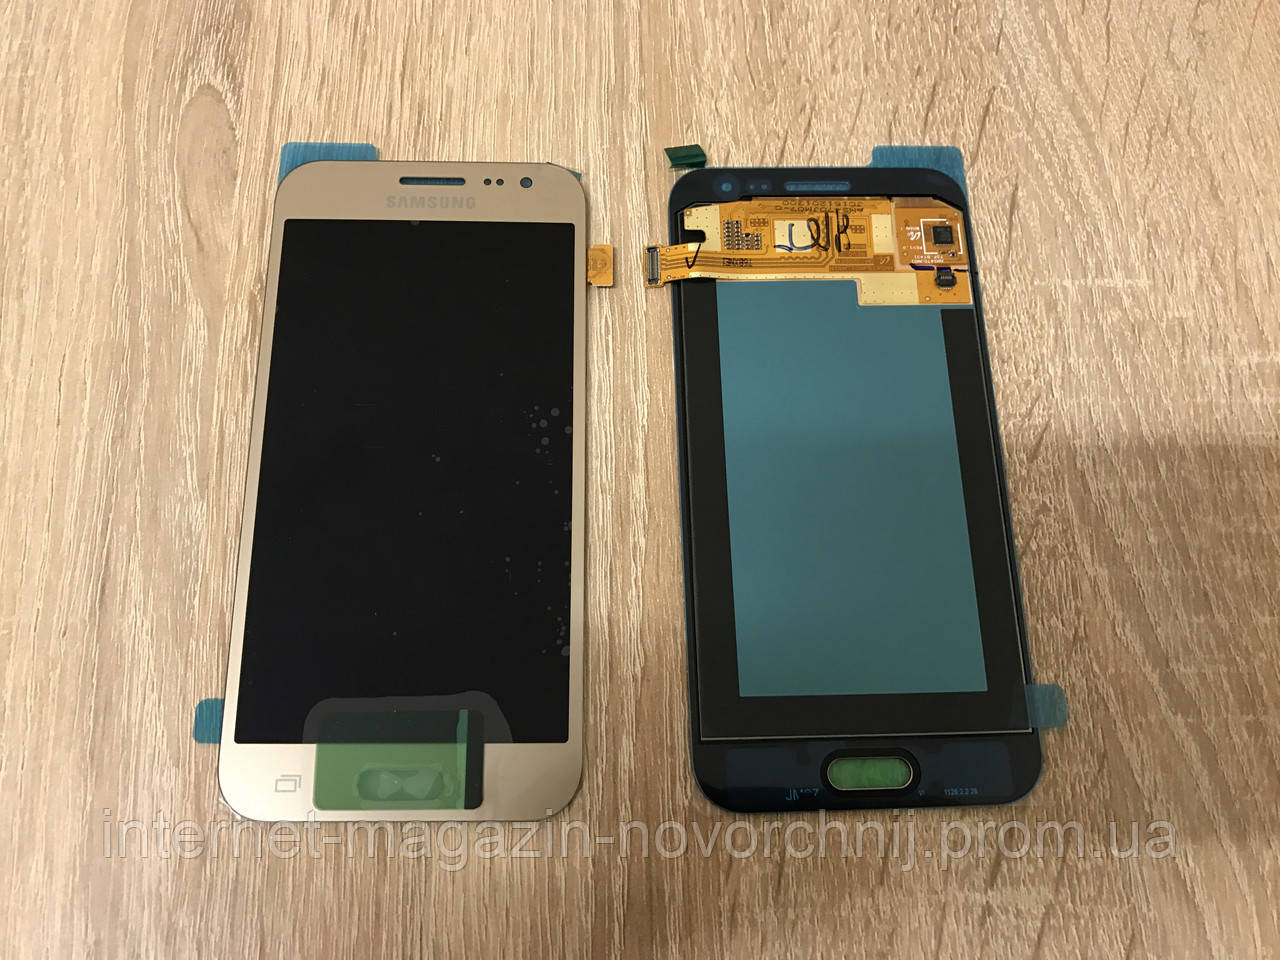 Дисплей Samsung J200 Galaxy J2 Золото(Gold), GH97-17940B, Super AMOLED!